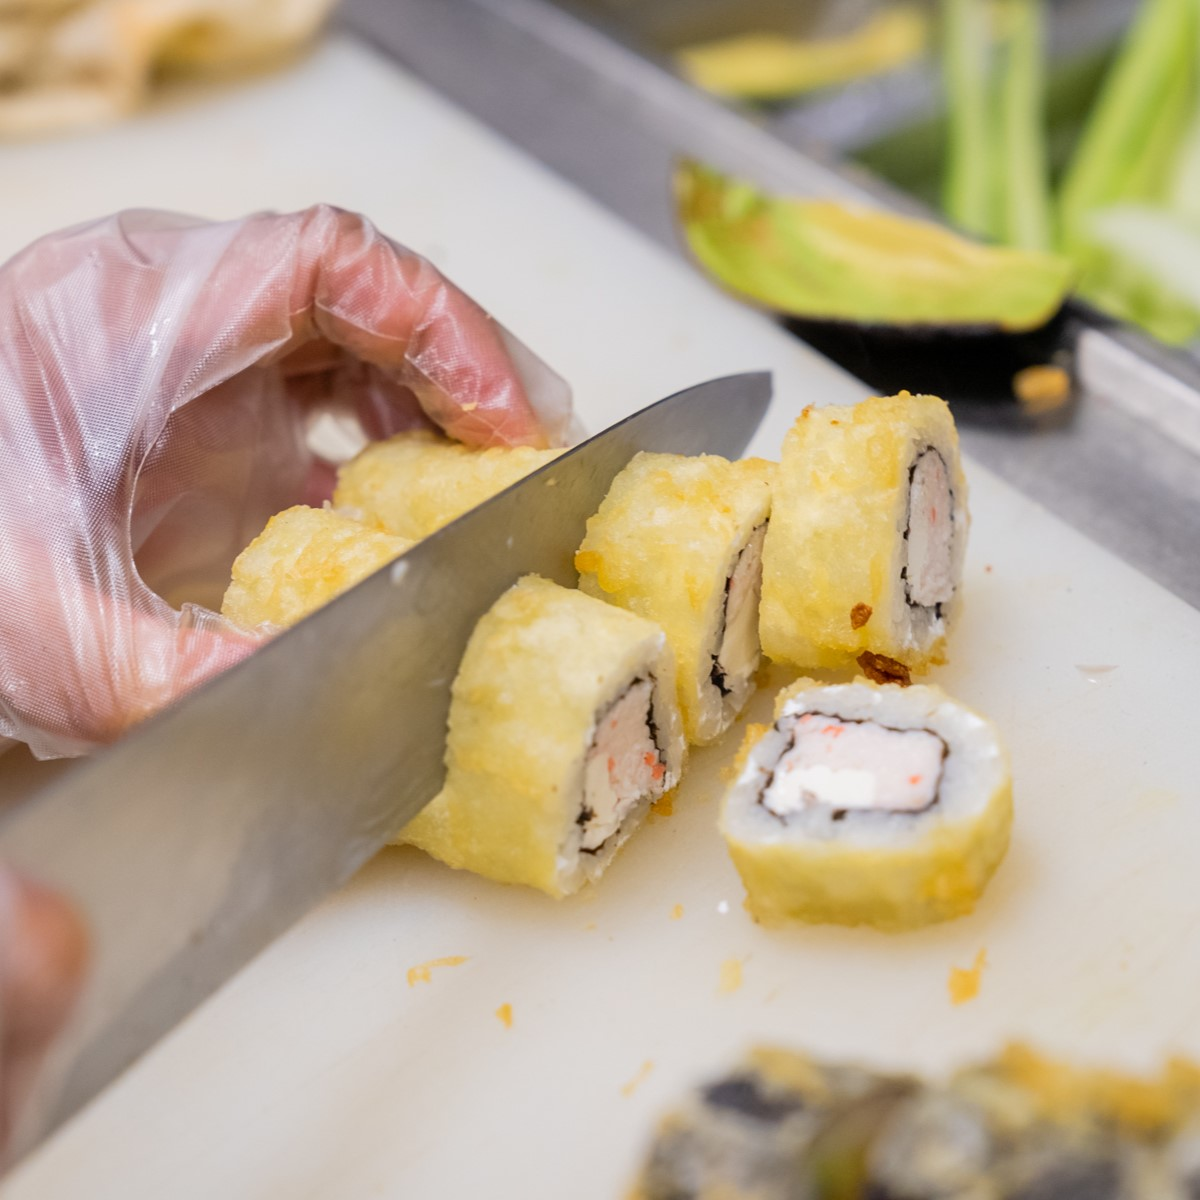 Sushi Being cut